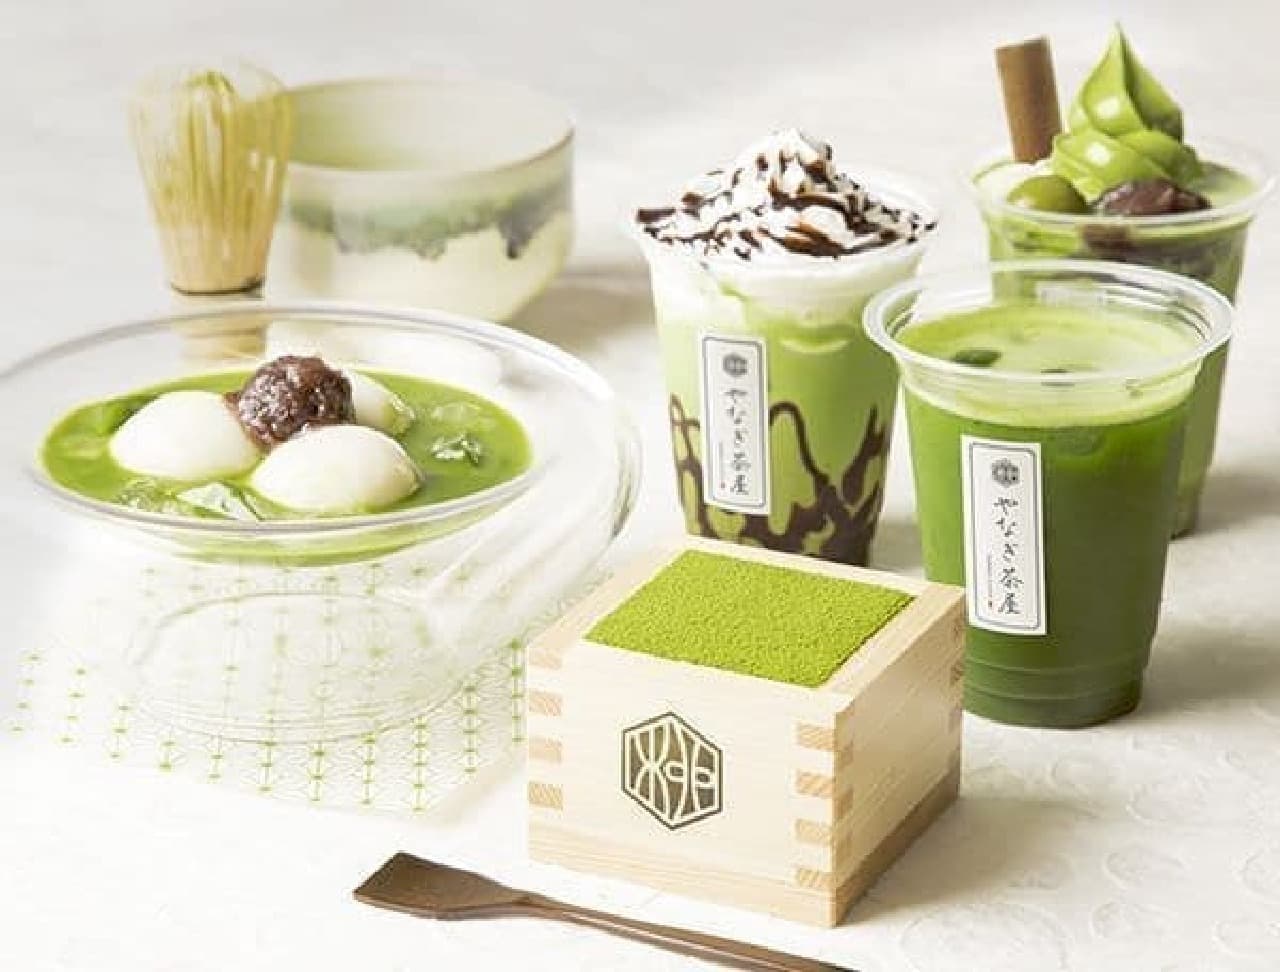 Yanagi Chaya Asakusa Shin-Nakamise Dori, a Japanese-style cafe where you can enjoy matcha green tea sweets